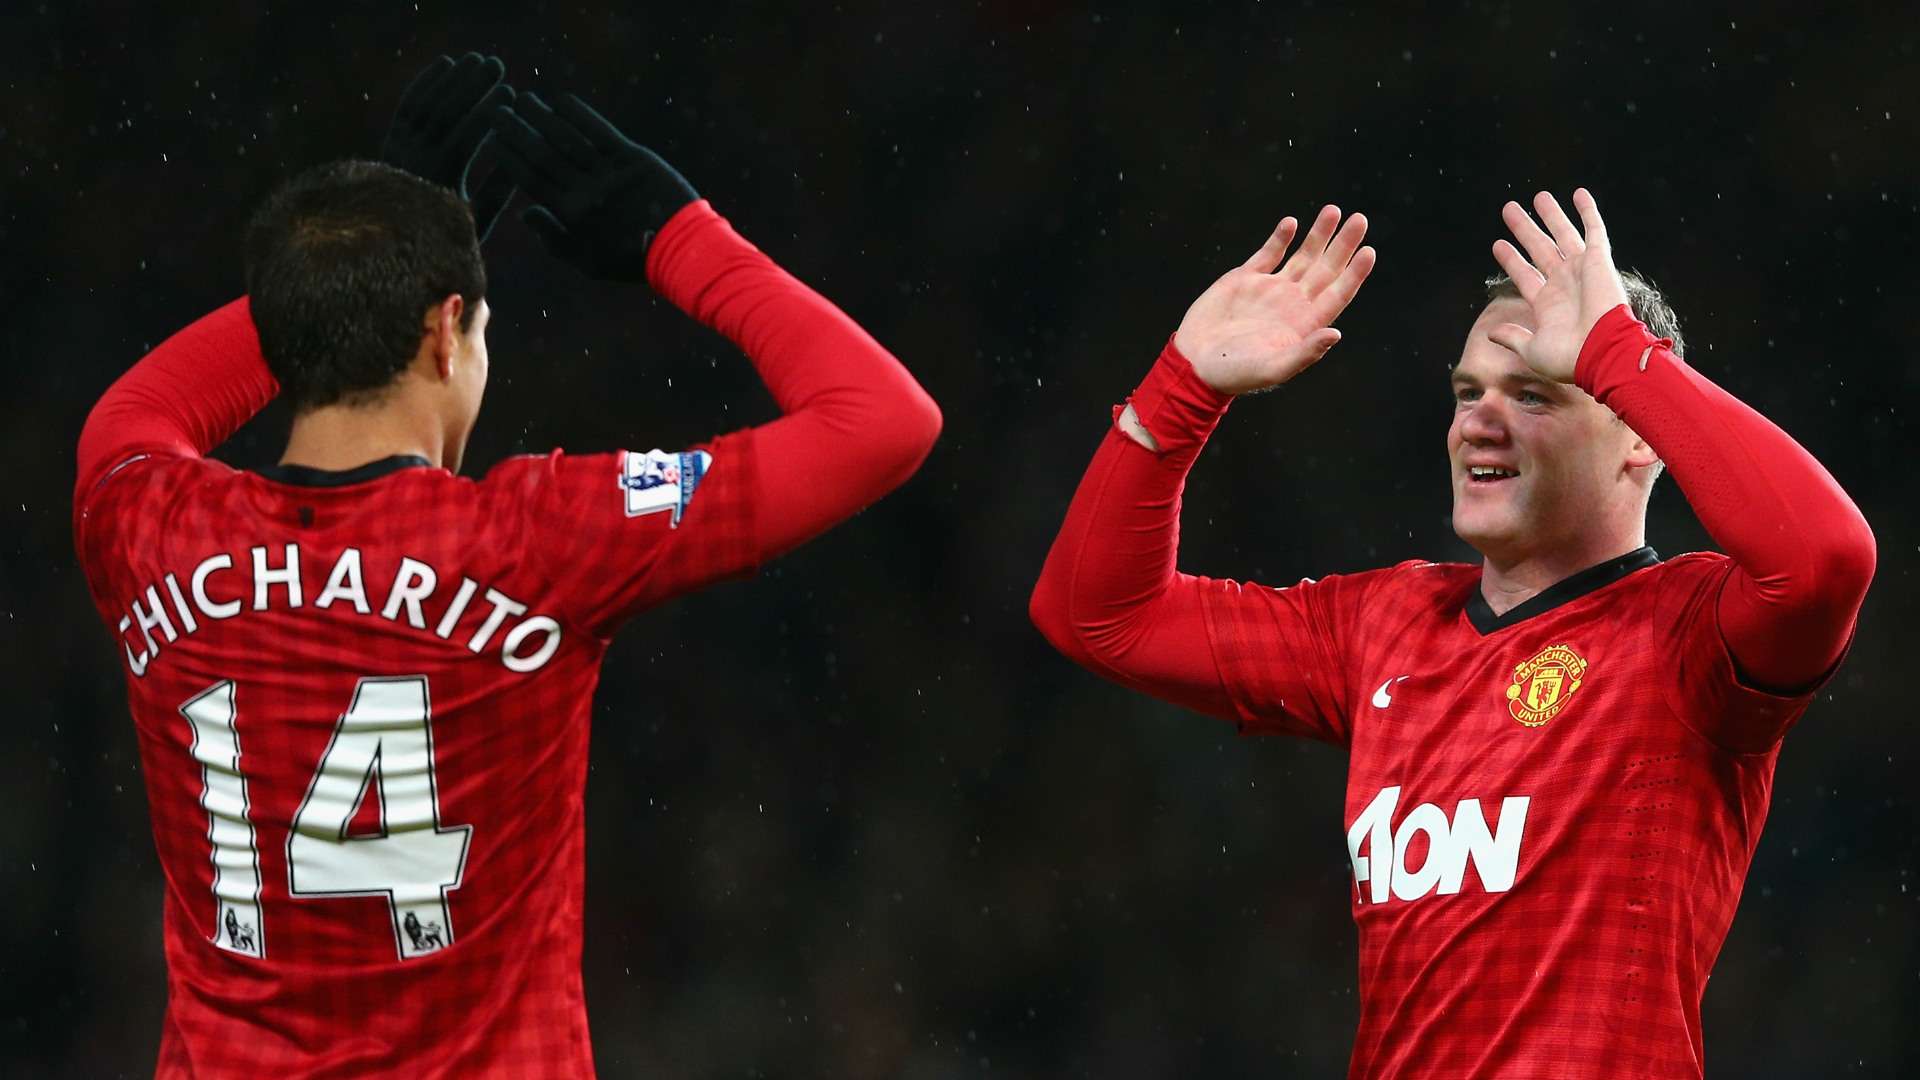 Javier Hernandez Chicharito Wayne Rooney Manchester United 26012013